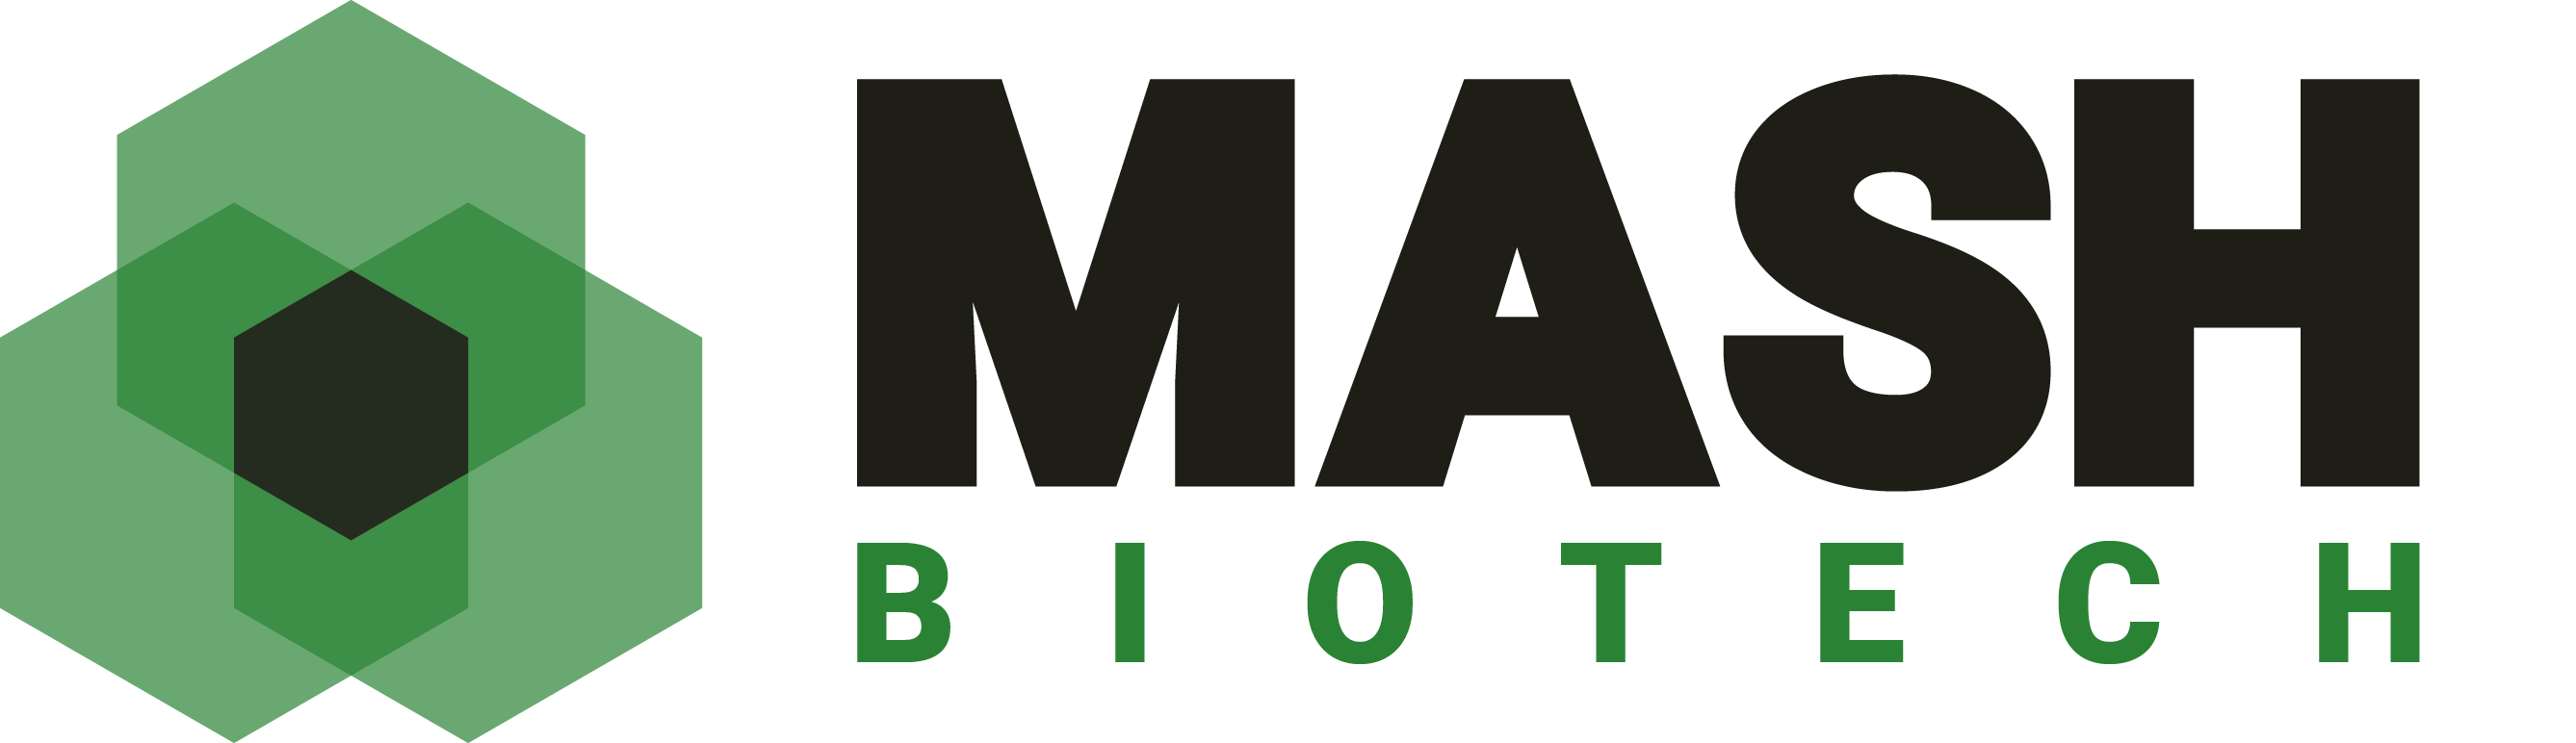 Mash Logo - MASH Biotech – Turning unused resources into value